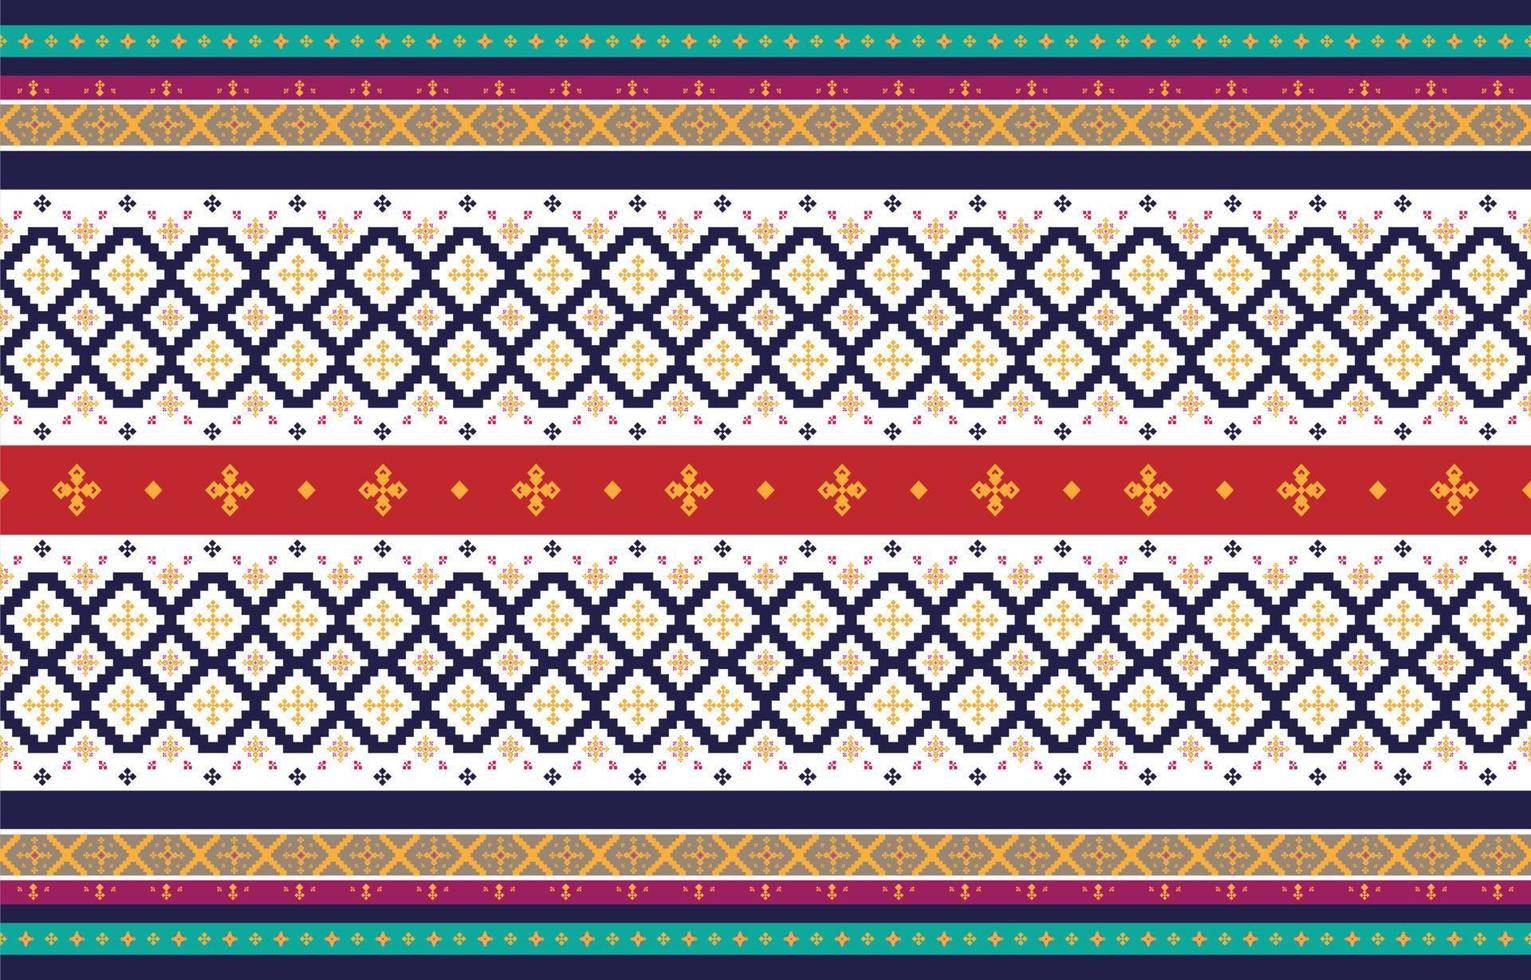 motivi geometrici e tribali astratti, design d'uso motivi in tessuto locale, design ispirato alle tribù indigene. illustrazione vettoriale geometrica